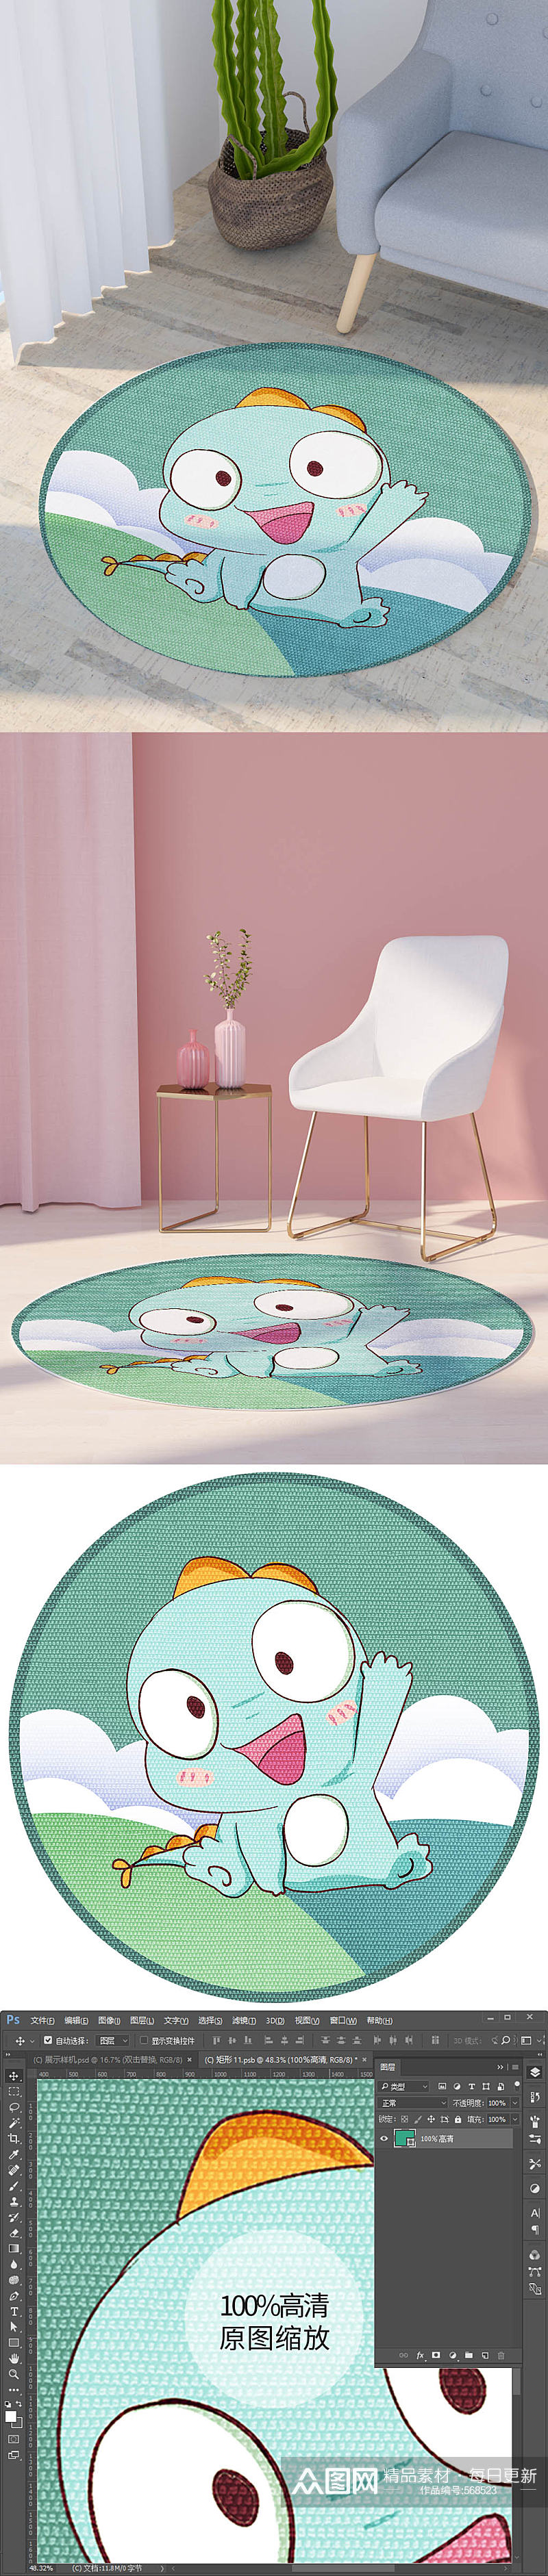 现代可爱小怪兽卡通圆形地毯高清印花图片素材